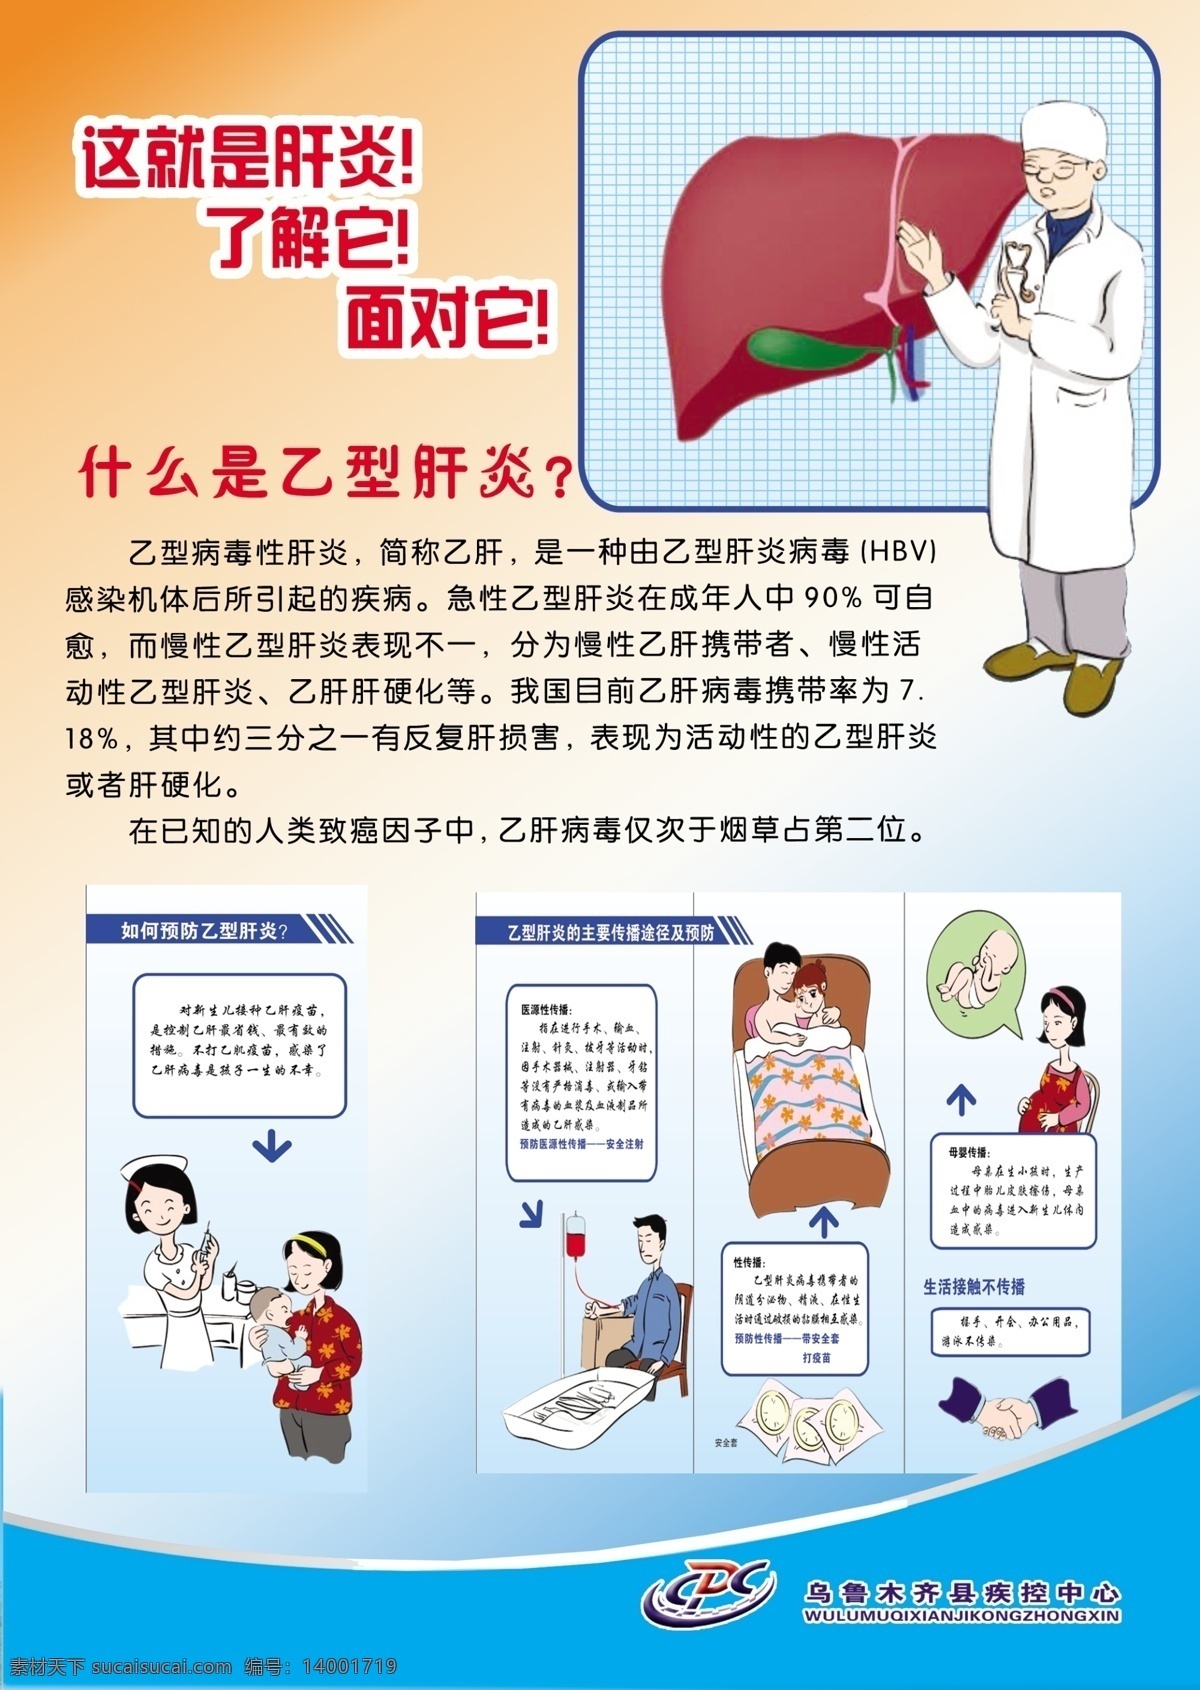 肝炎展板 肝炎 肝炎预防 肝炎传播 传染病 疾病预防 展板模板 广告设计模板 源文件